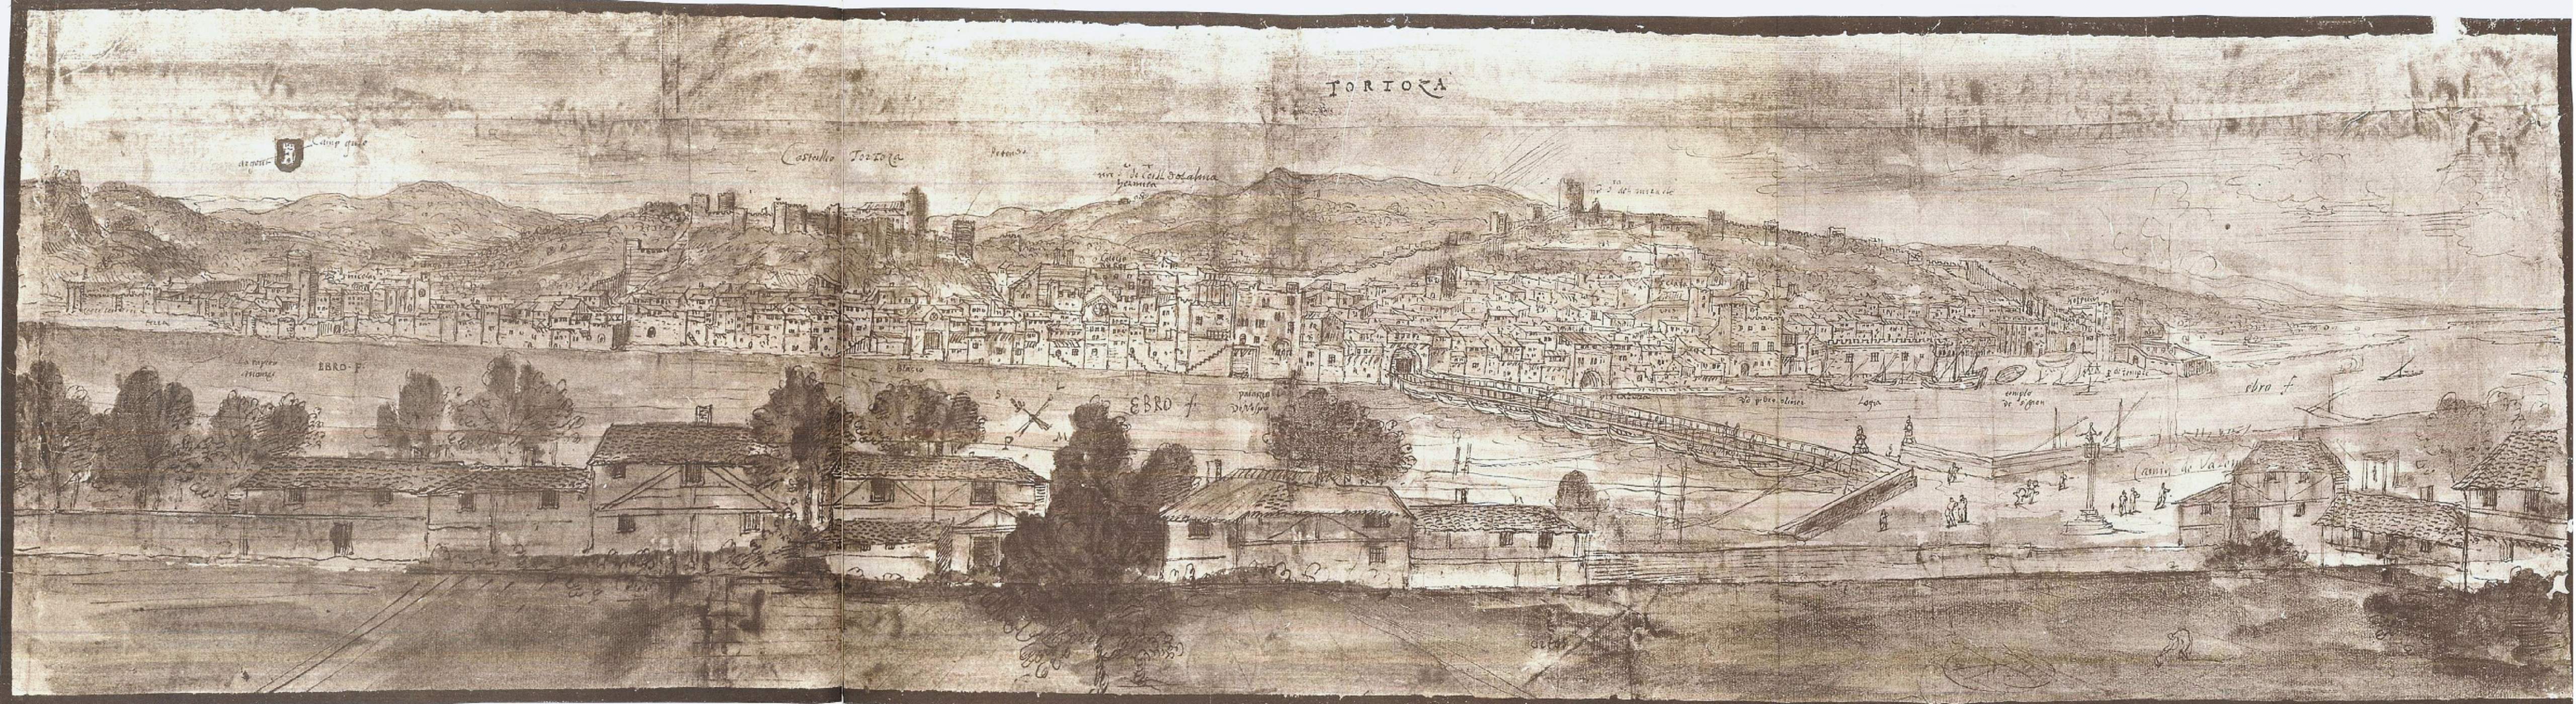 Gravat de Tortosa (finals del segle XVI). Font Ajuntament de Tortosa